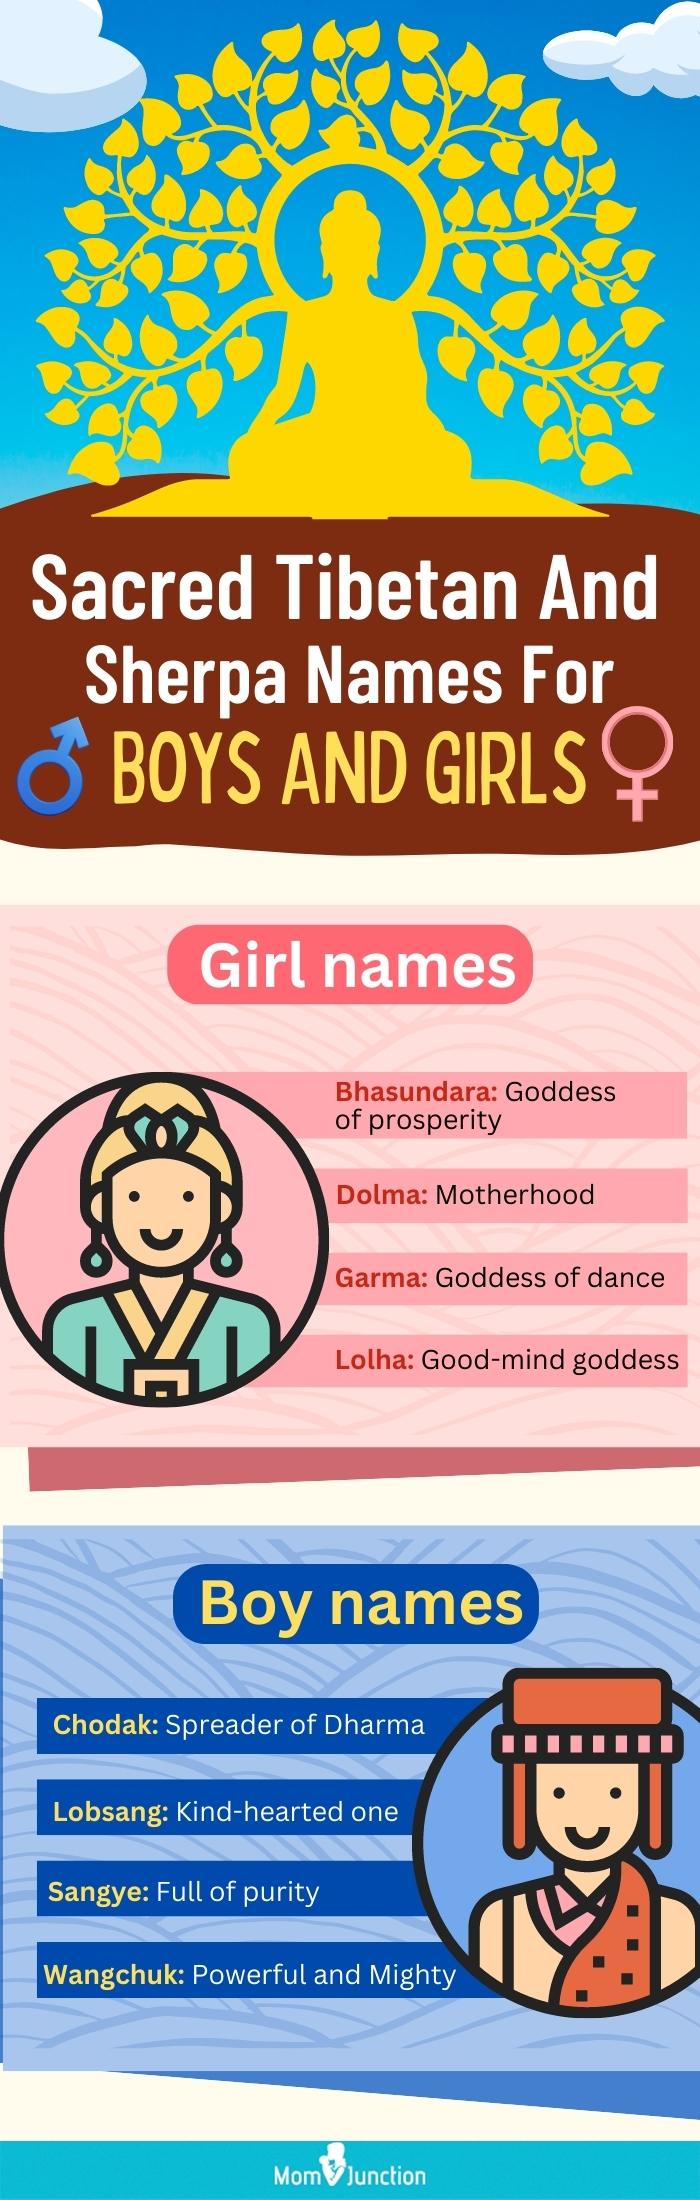 夏尔巴人给男孩和女孩起的名字(信息图)